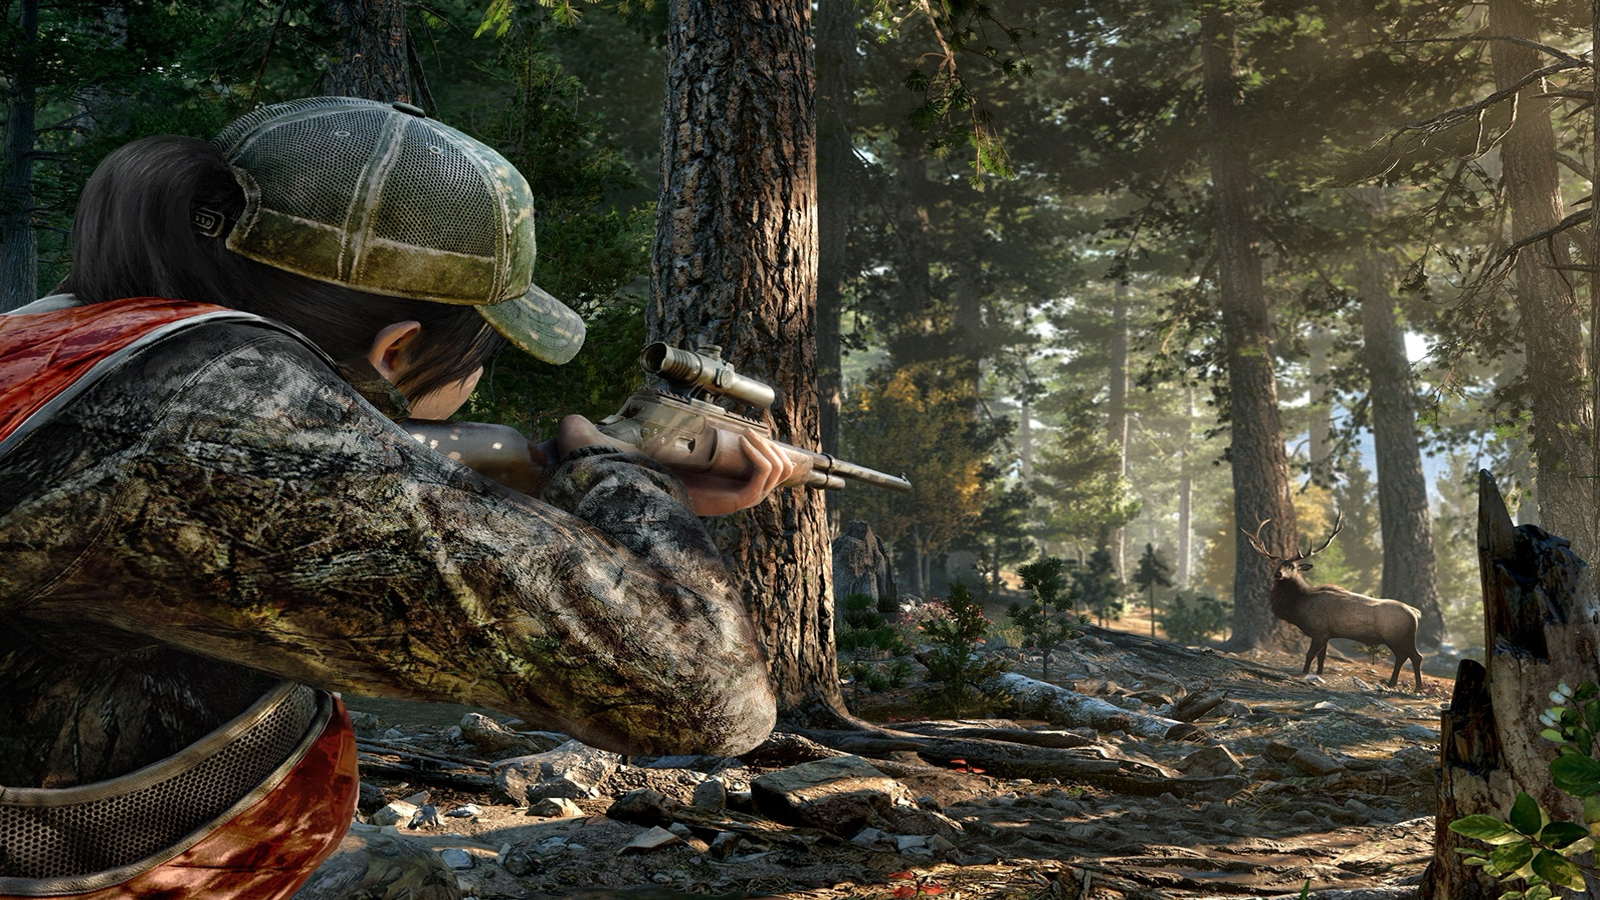 Far Cry 5: Requisitos mínimos y recomendados para PC